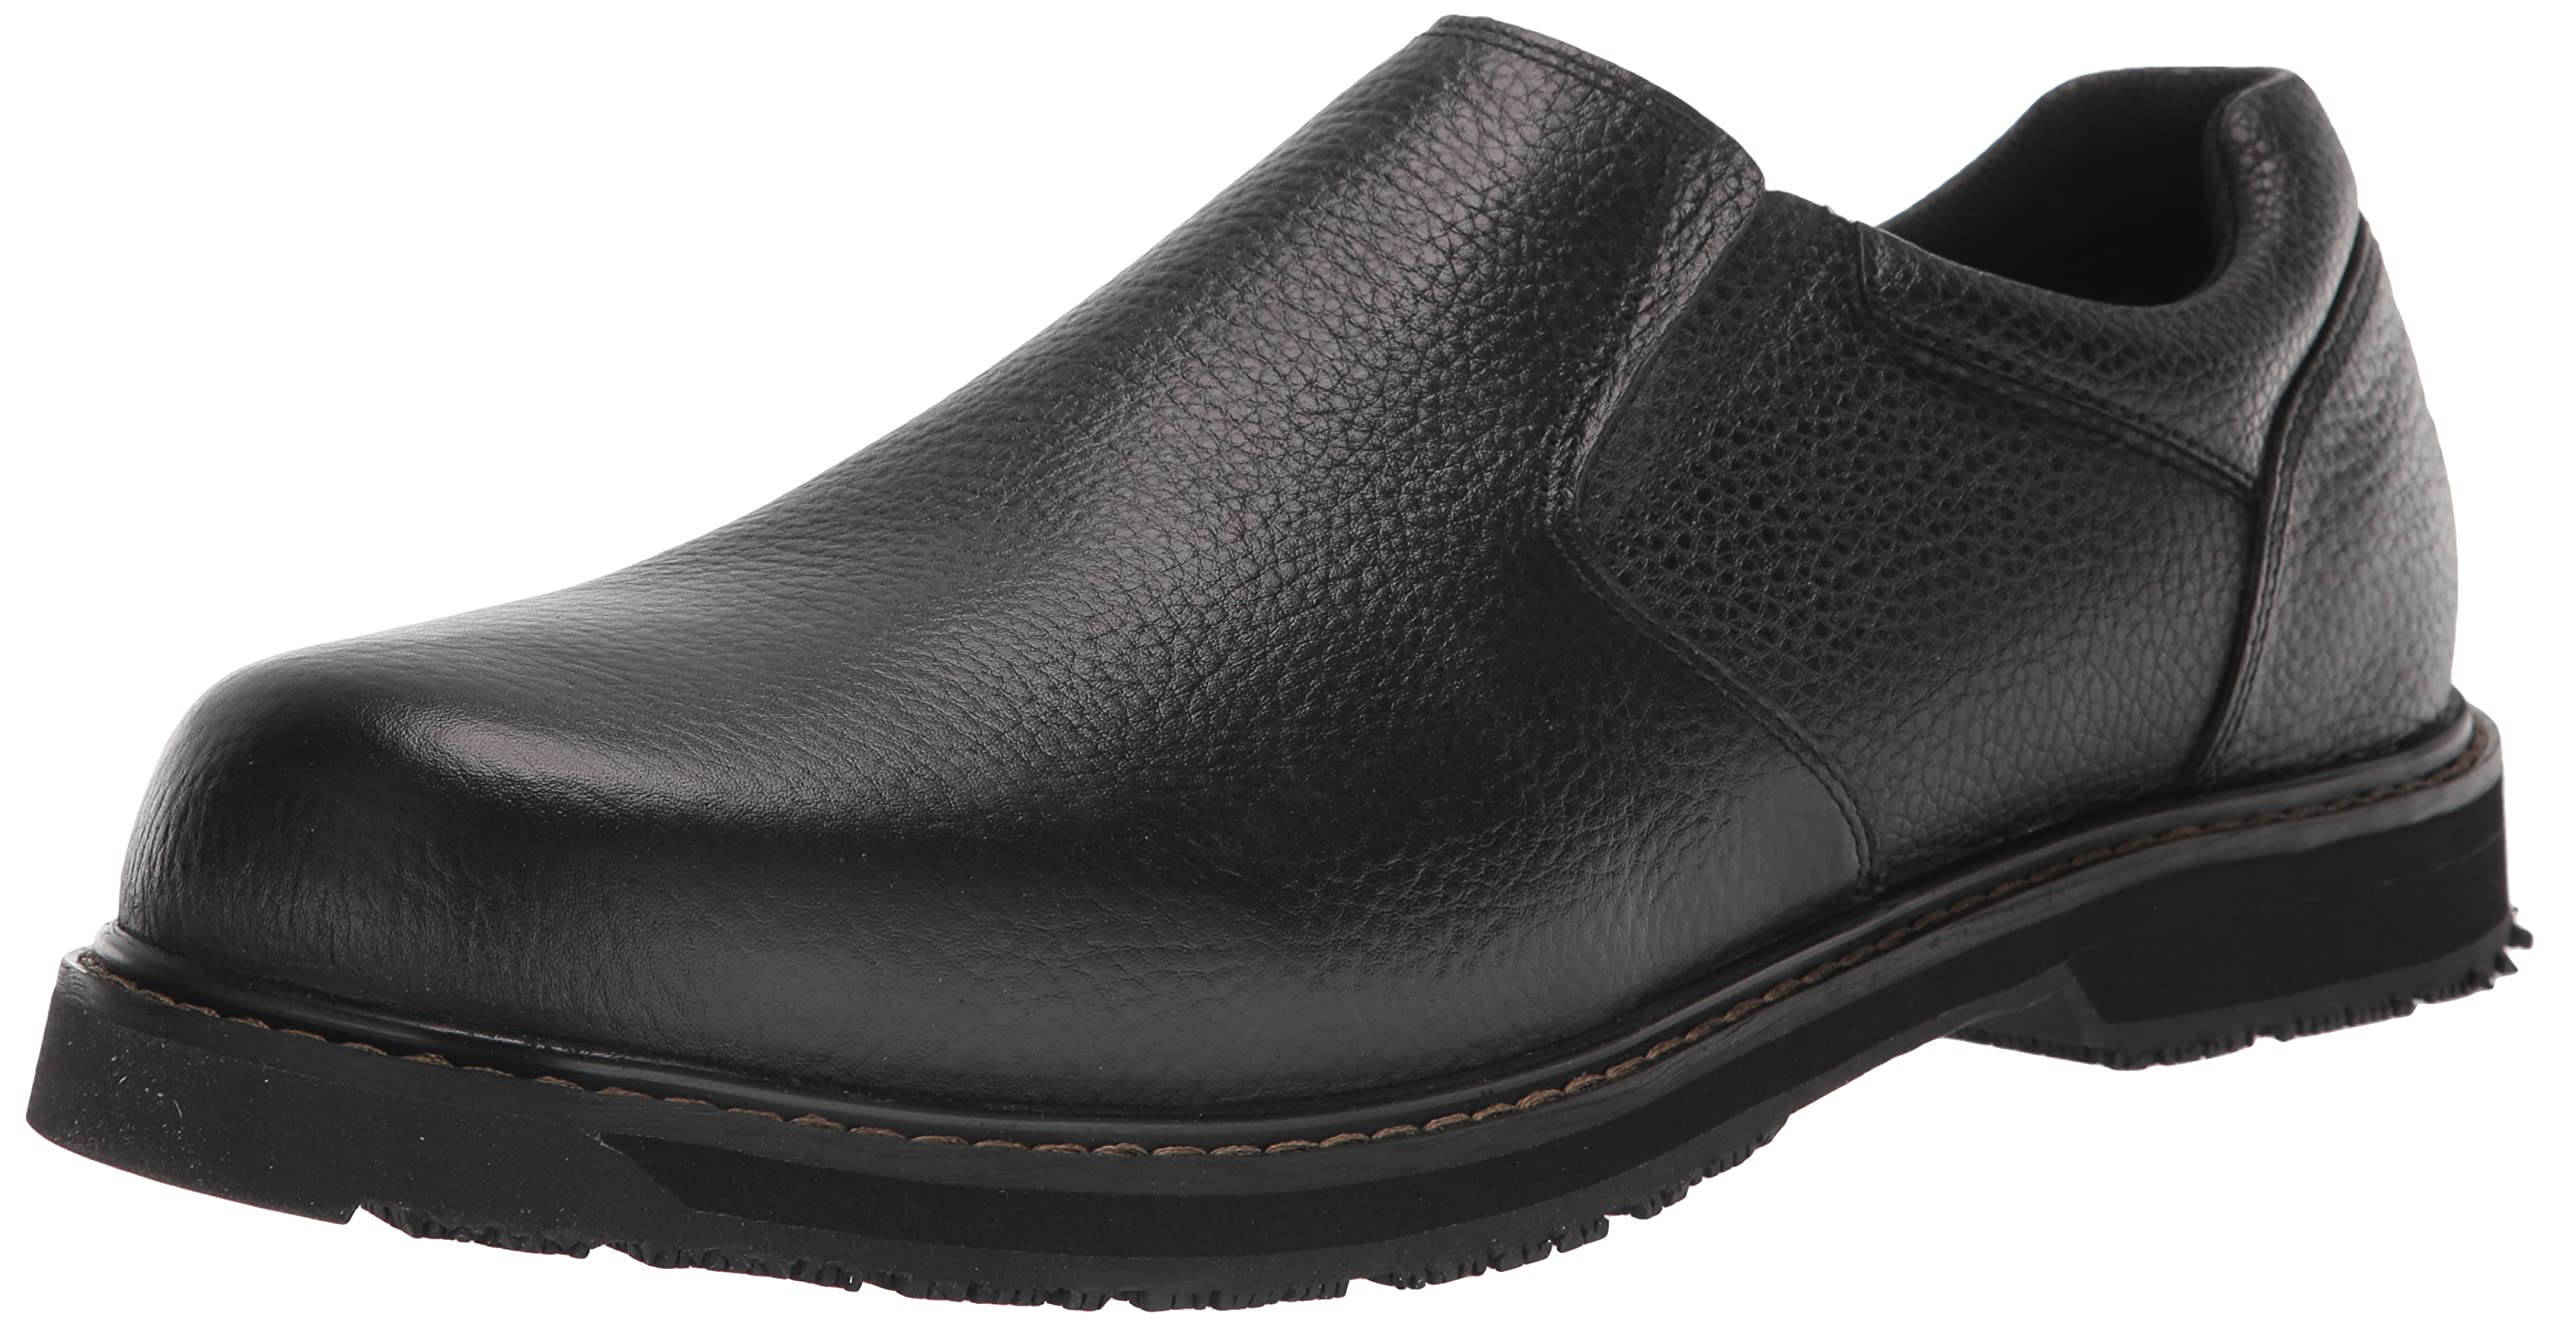 Dr. Scholl's Shoes Men's Winder II Slip Resistant Work Loafer